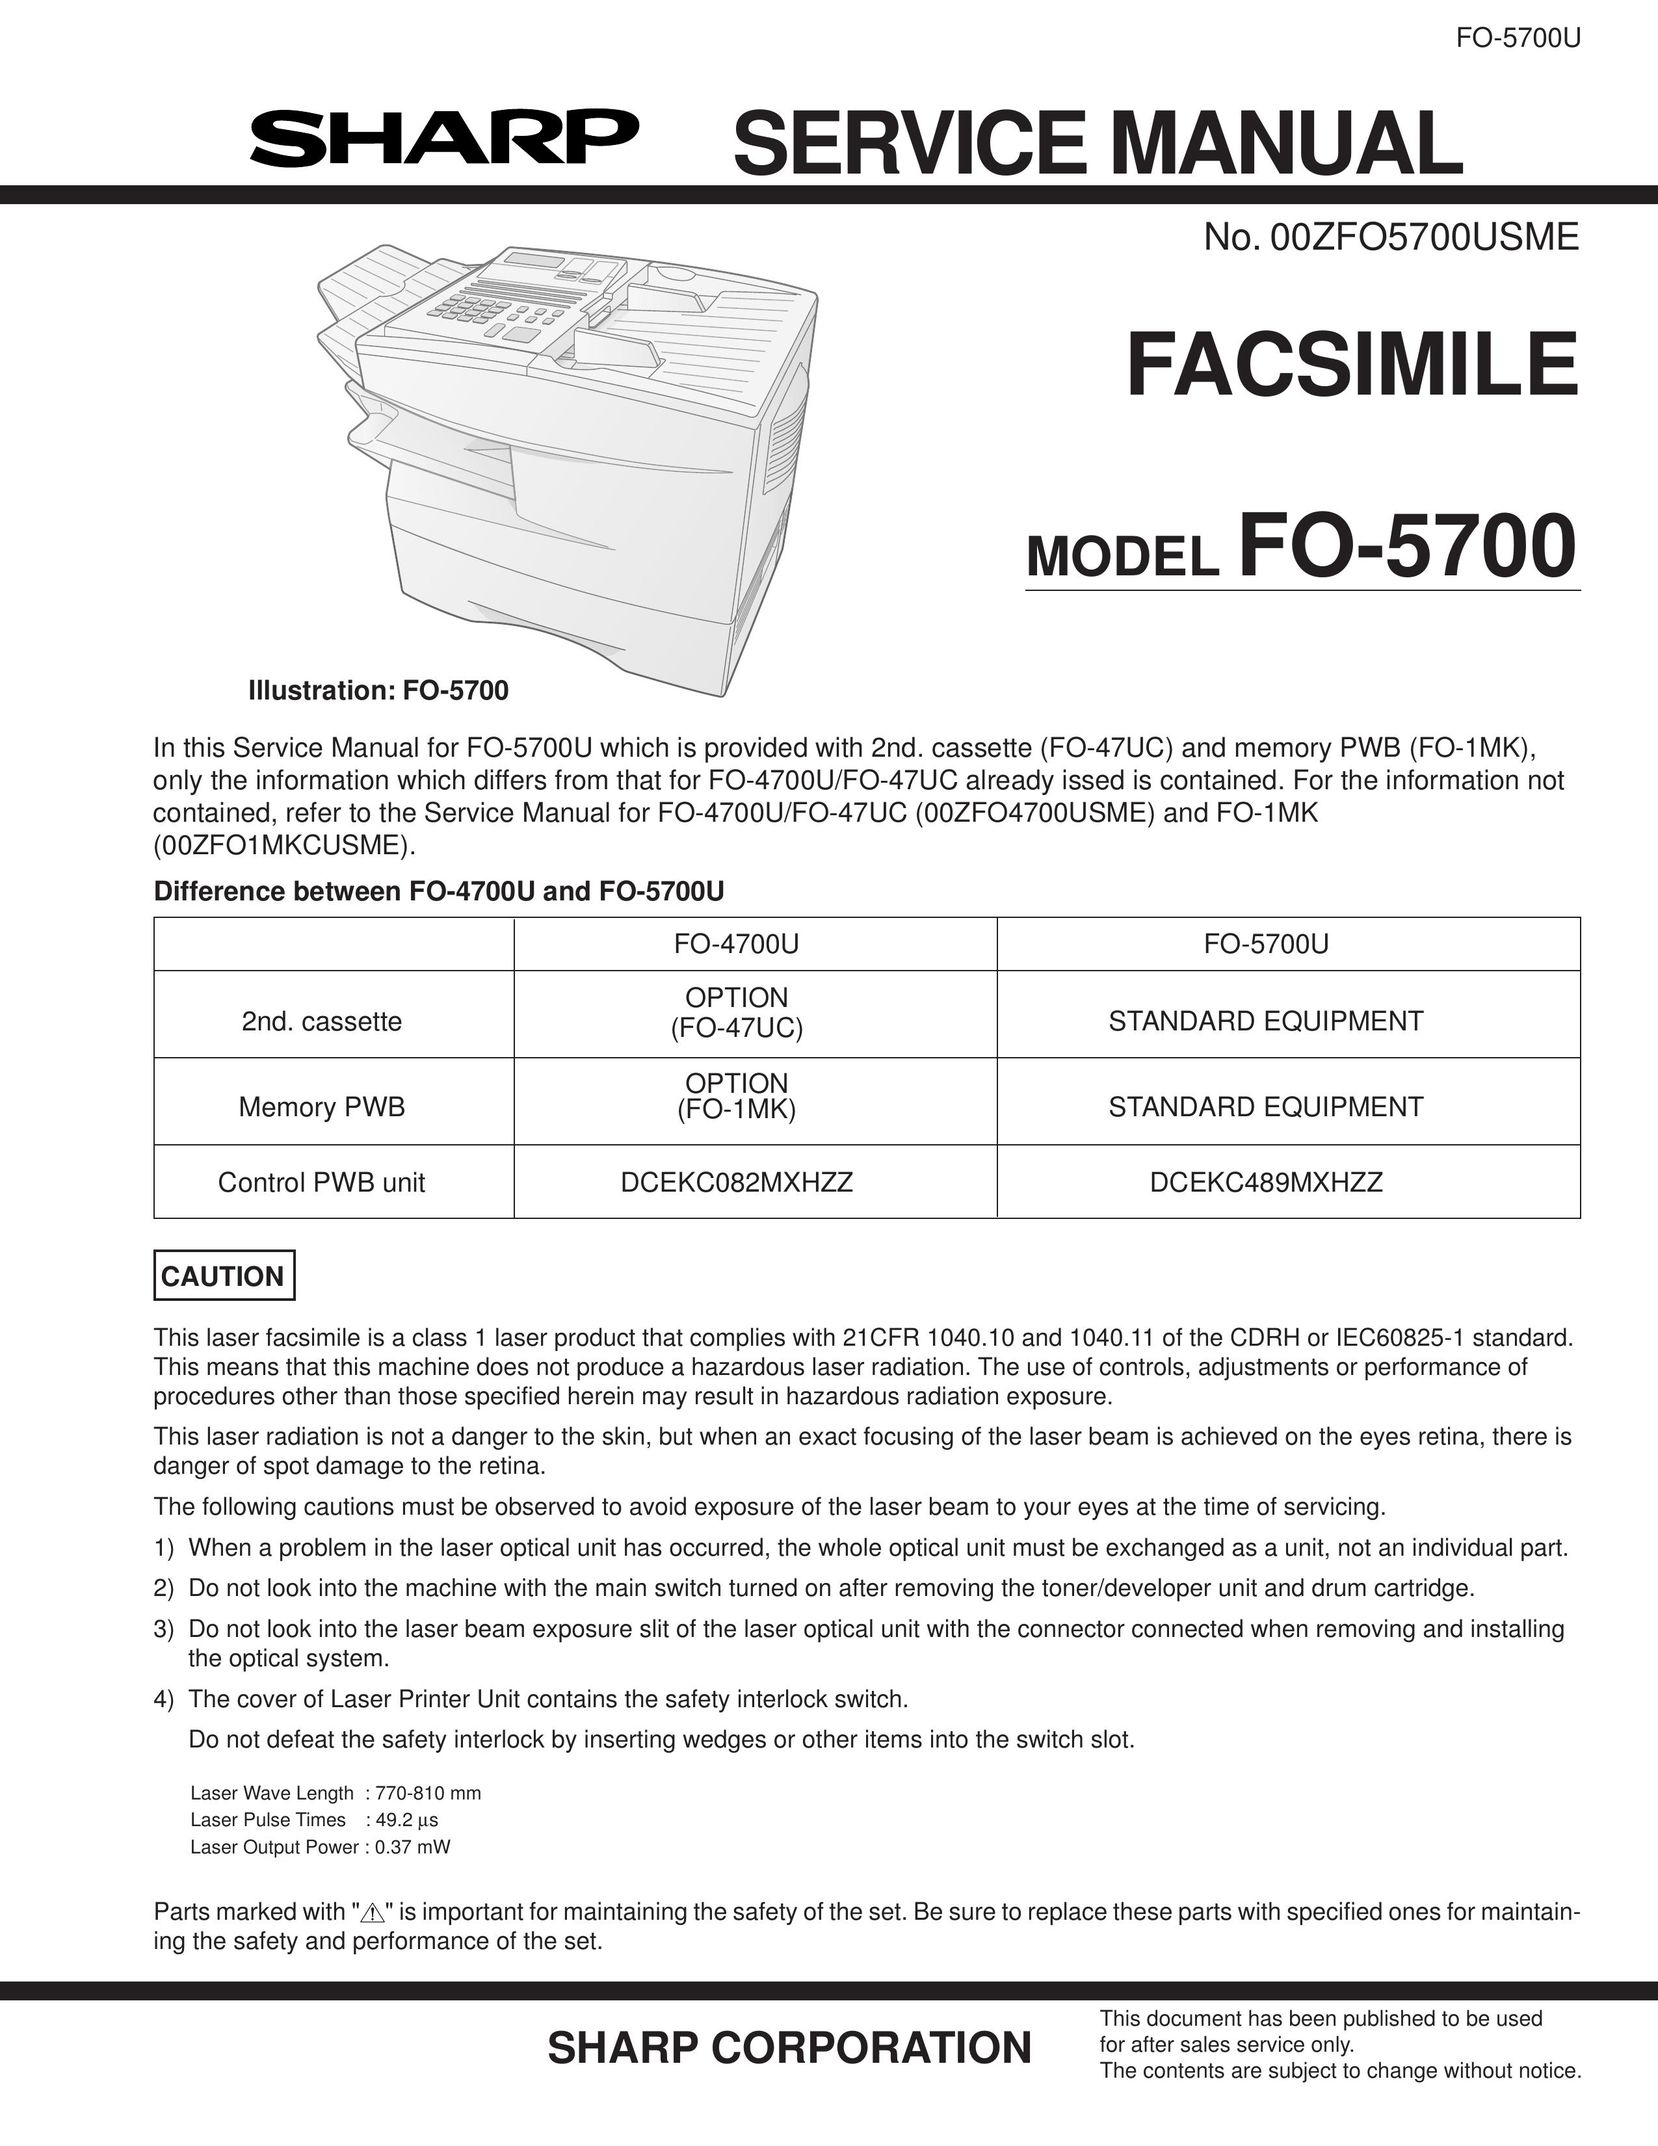 Sharp FO-5700U Fax Machine User Manual